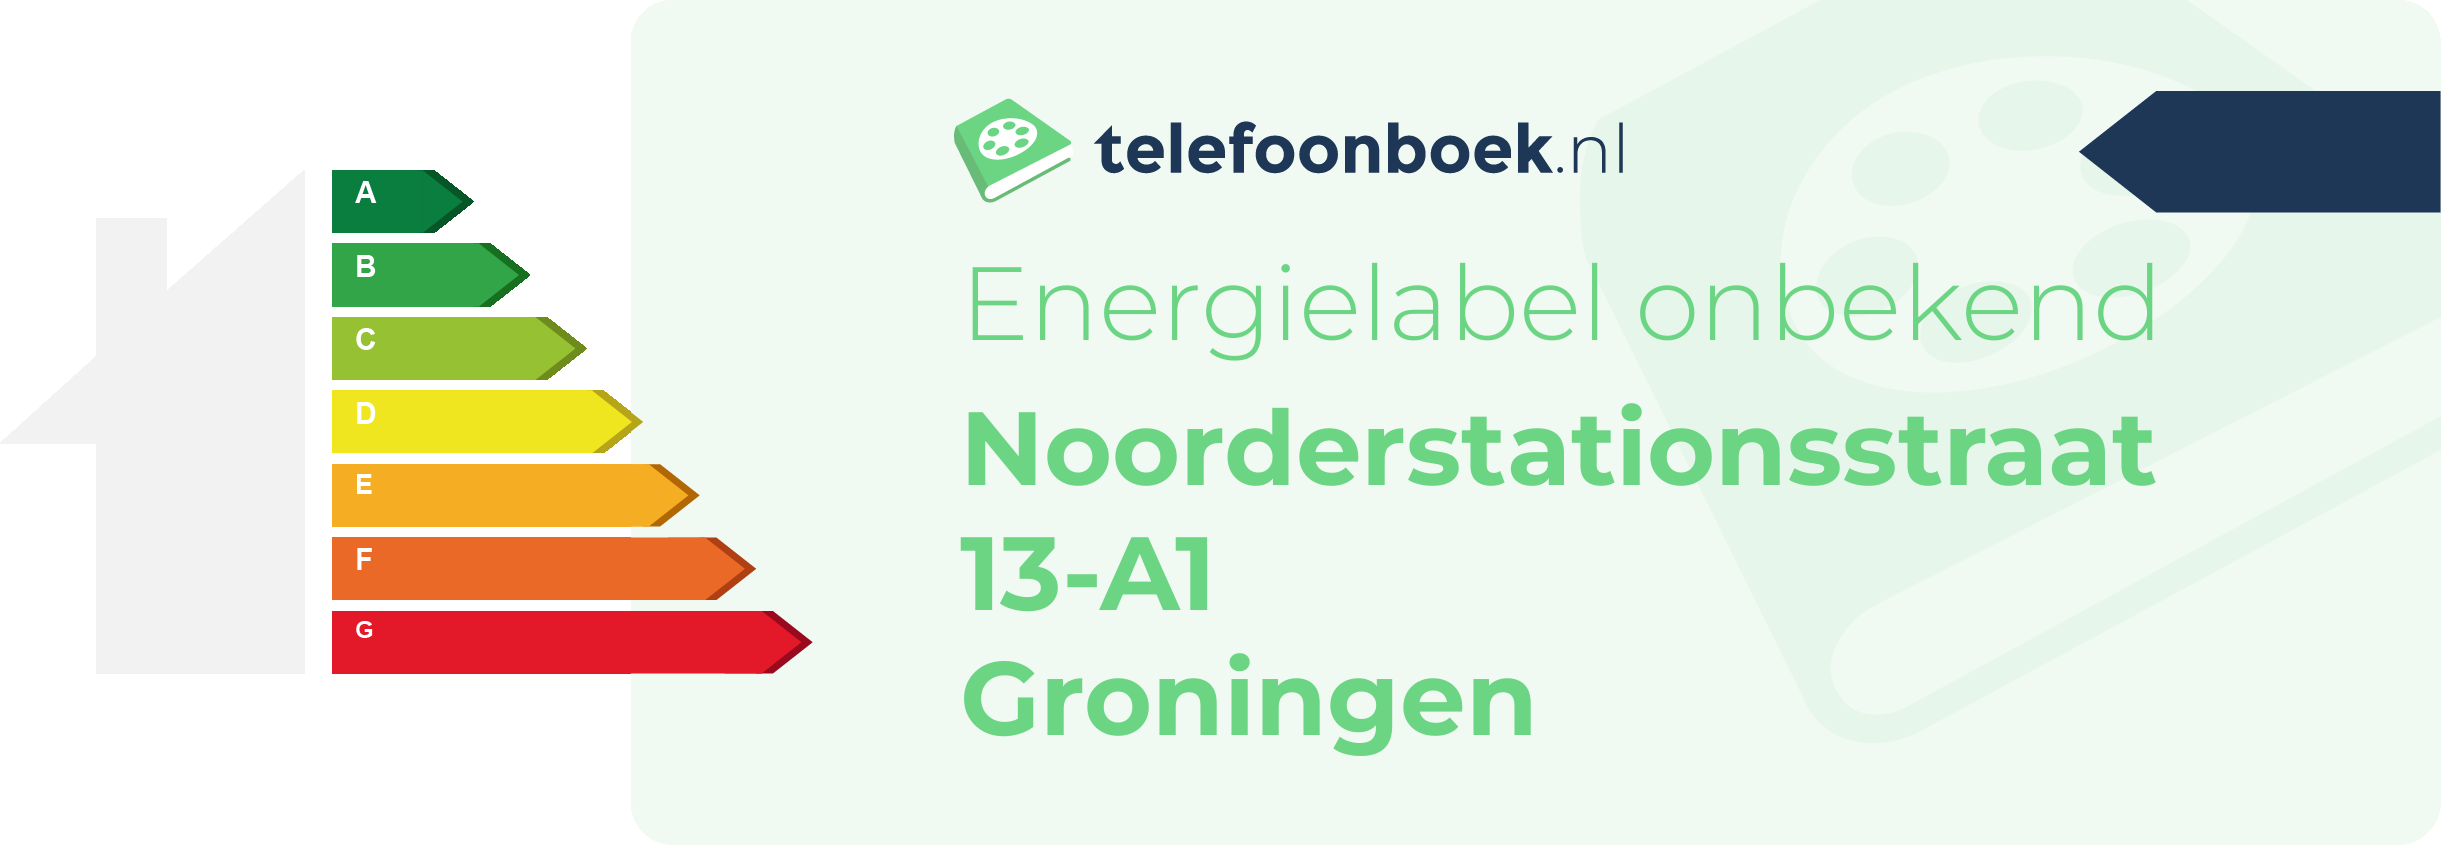 Energielabel Noorderstationsstraat 13-A1 Groningen